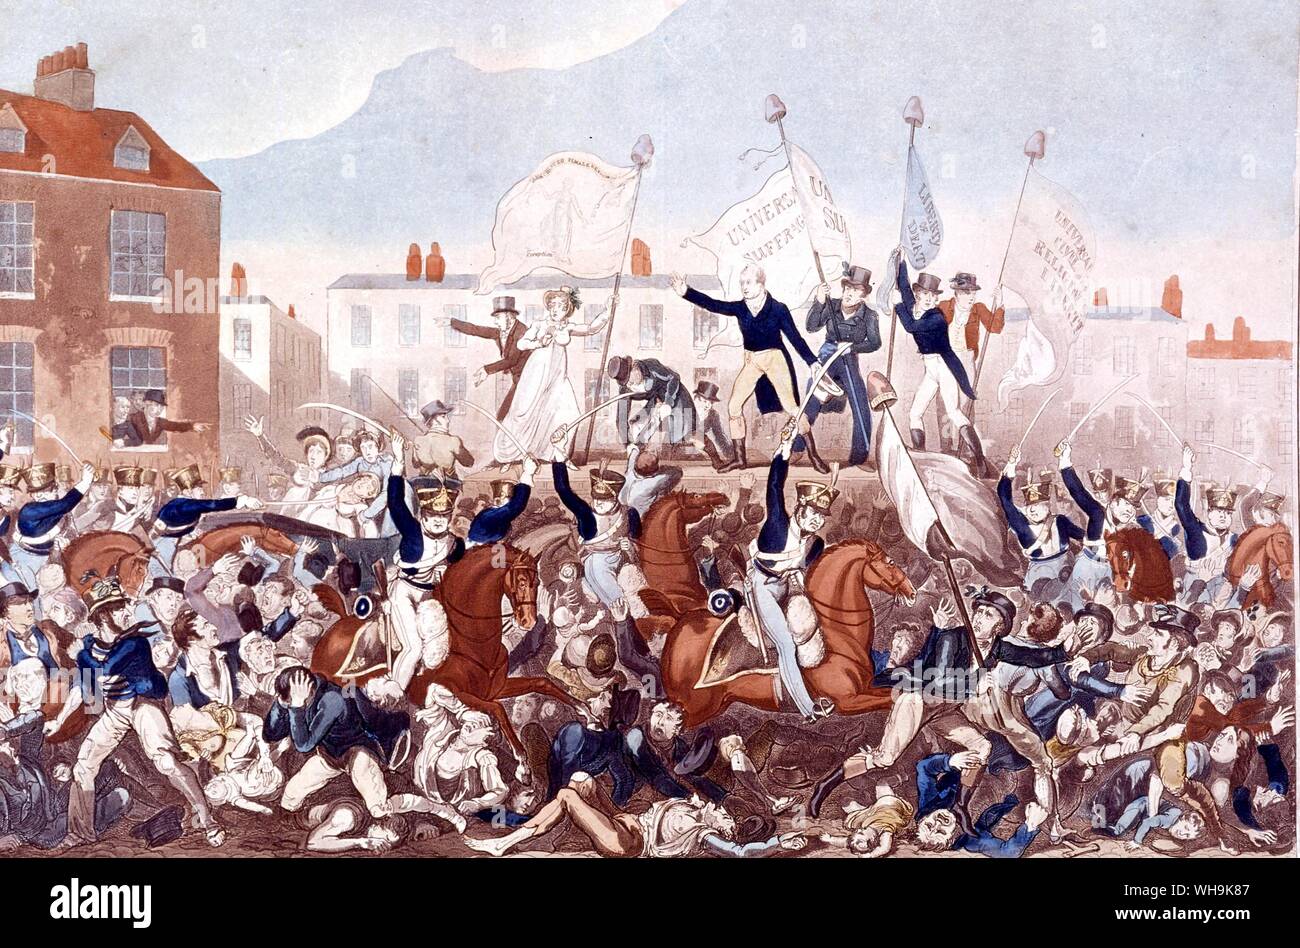 La masacre de Peterloo 1819 división forzosa de una reunión masiva sobre la reforma parlamentaria celebrada en San Pedro el campo Manchester. El Manchester Yeomanry cargada a la multitud matando a 11 personas. Foto de stock